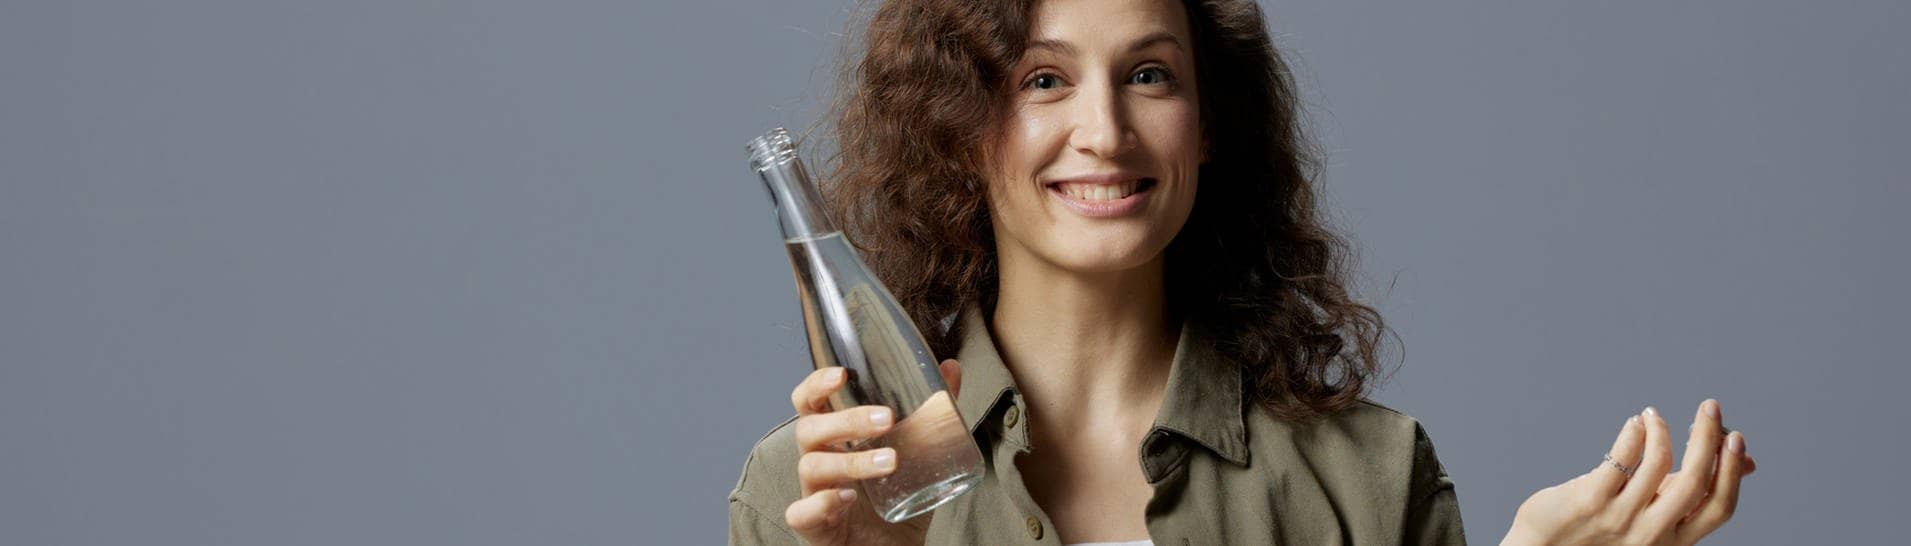 Frau hält ein Glas mit Leitungswasser in der Hand und fragt sich, welche Mythen stimmen.